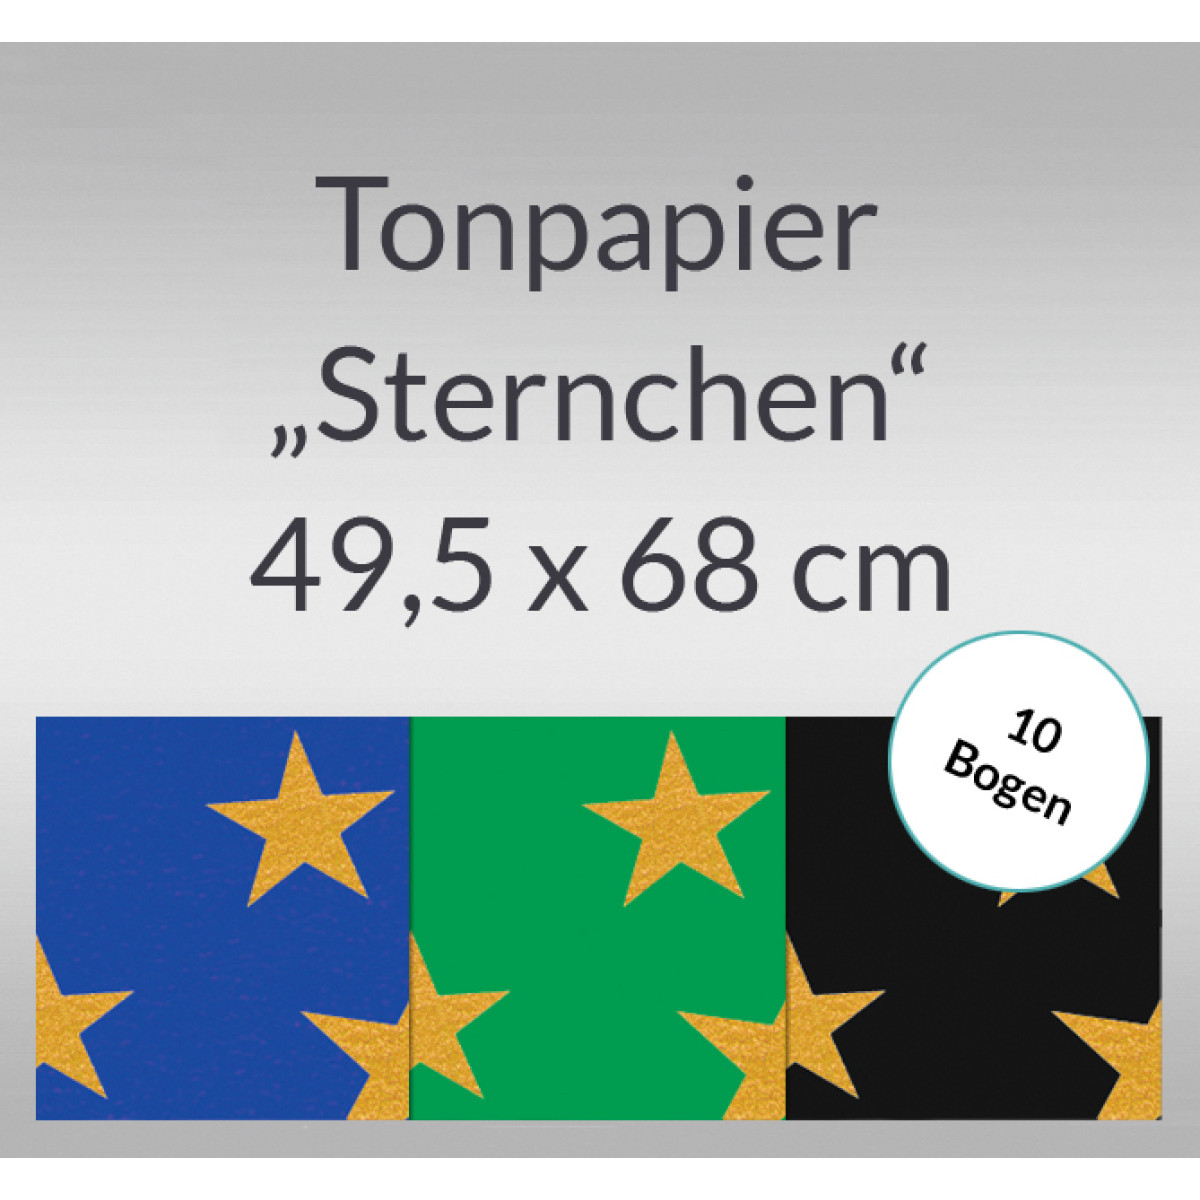 Sternchen-Tonzeichenpapier 130 g/qm 49,5 x 68 cm - 10 Bogen